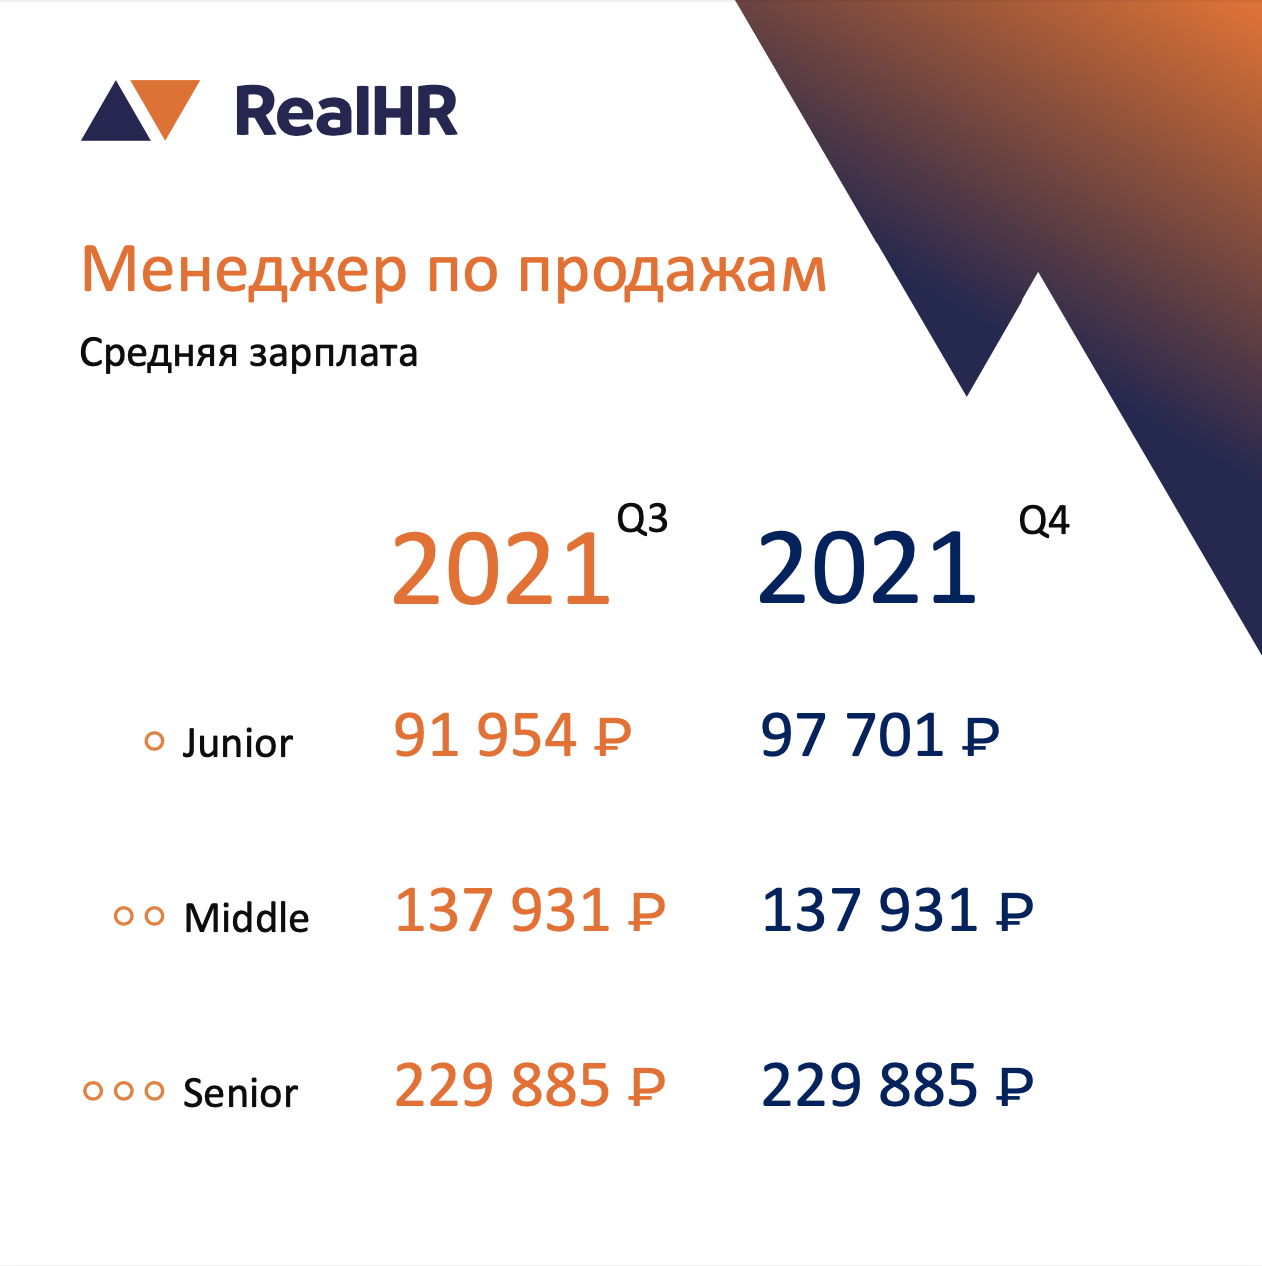 аналитика зарплат от RealHR